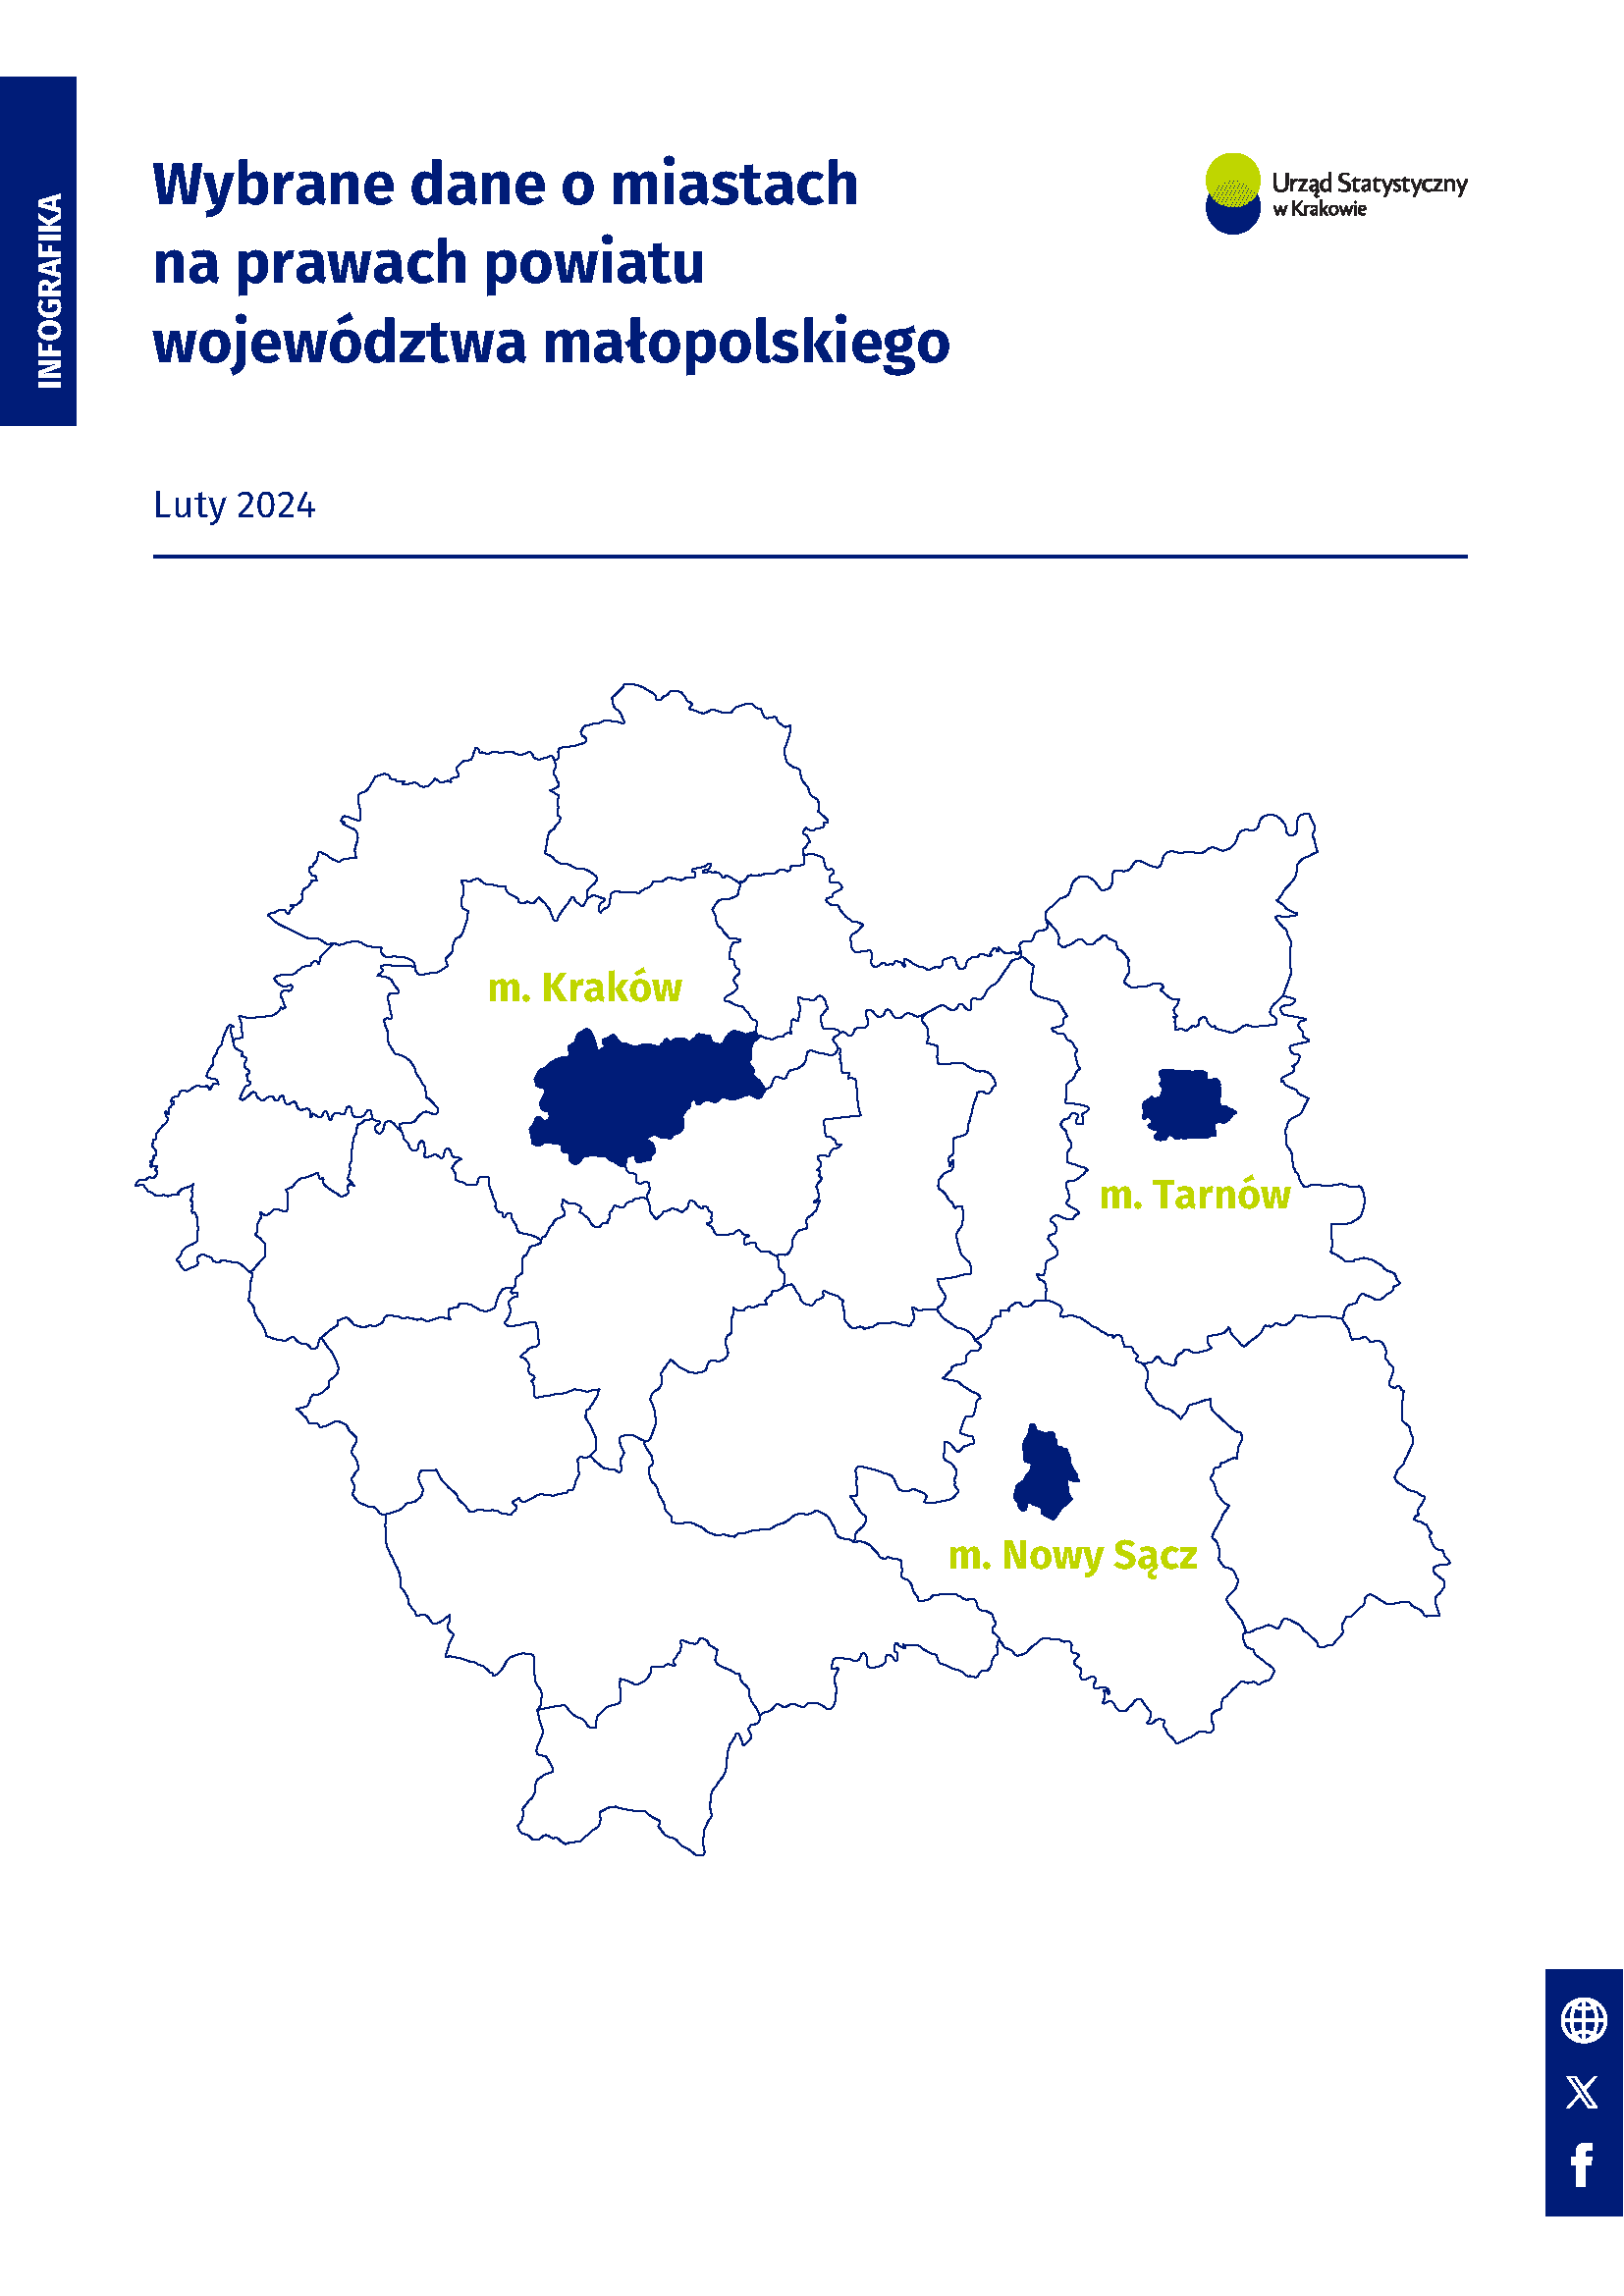 Wybrane dane o miastach na prawach powiatu województwa małopolskiego - luty 2024